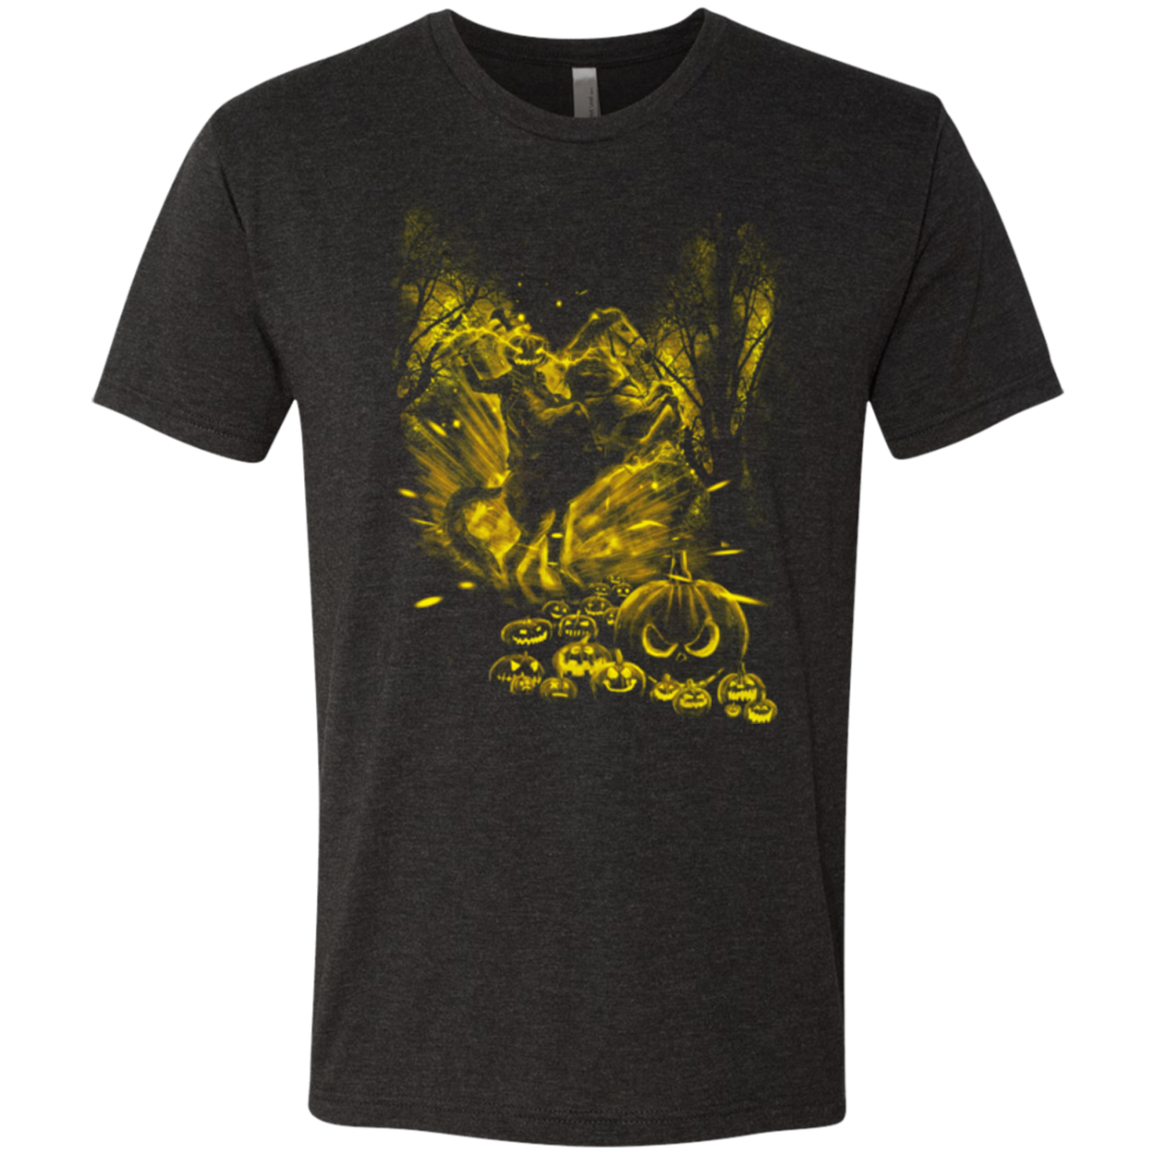 Hollow Storm Men's Triblend T-Shirt